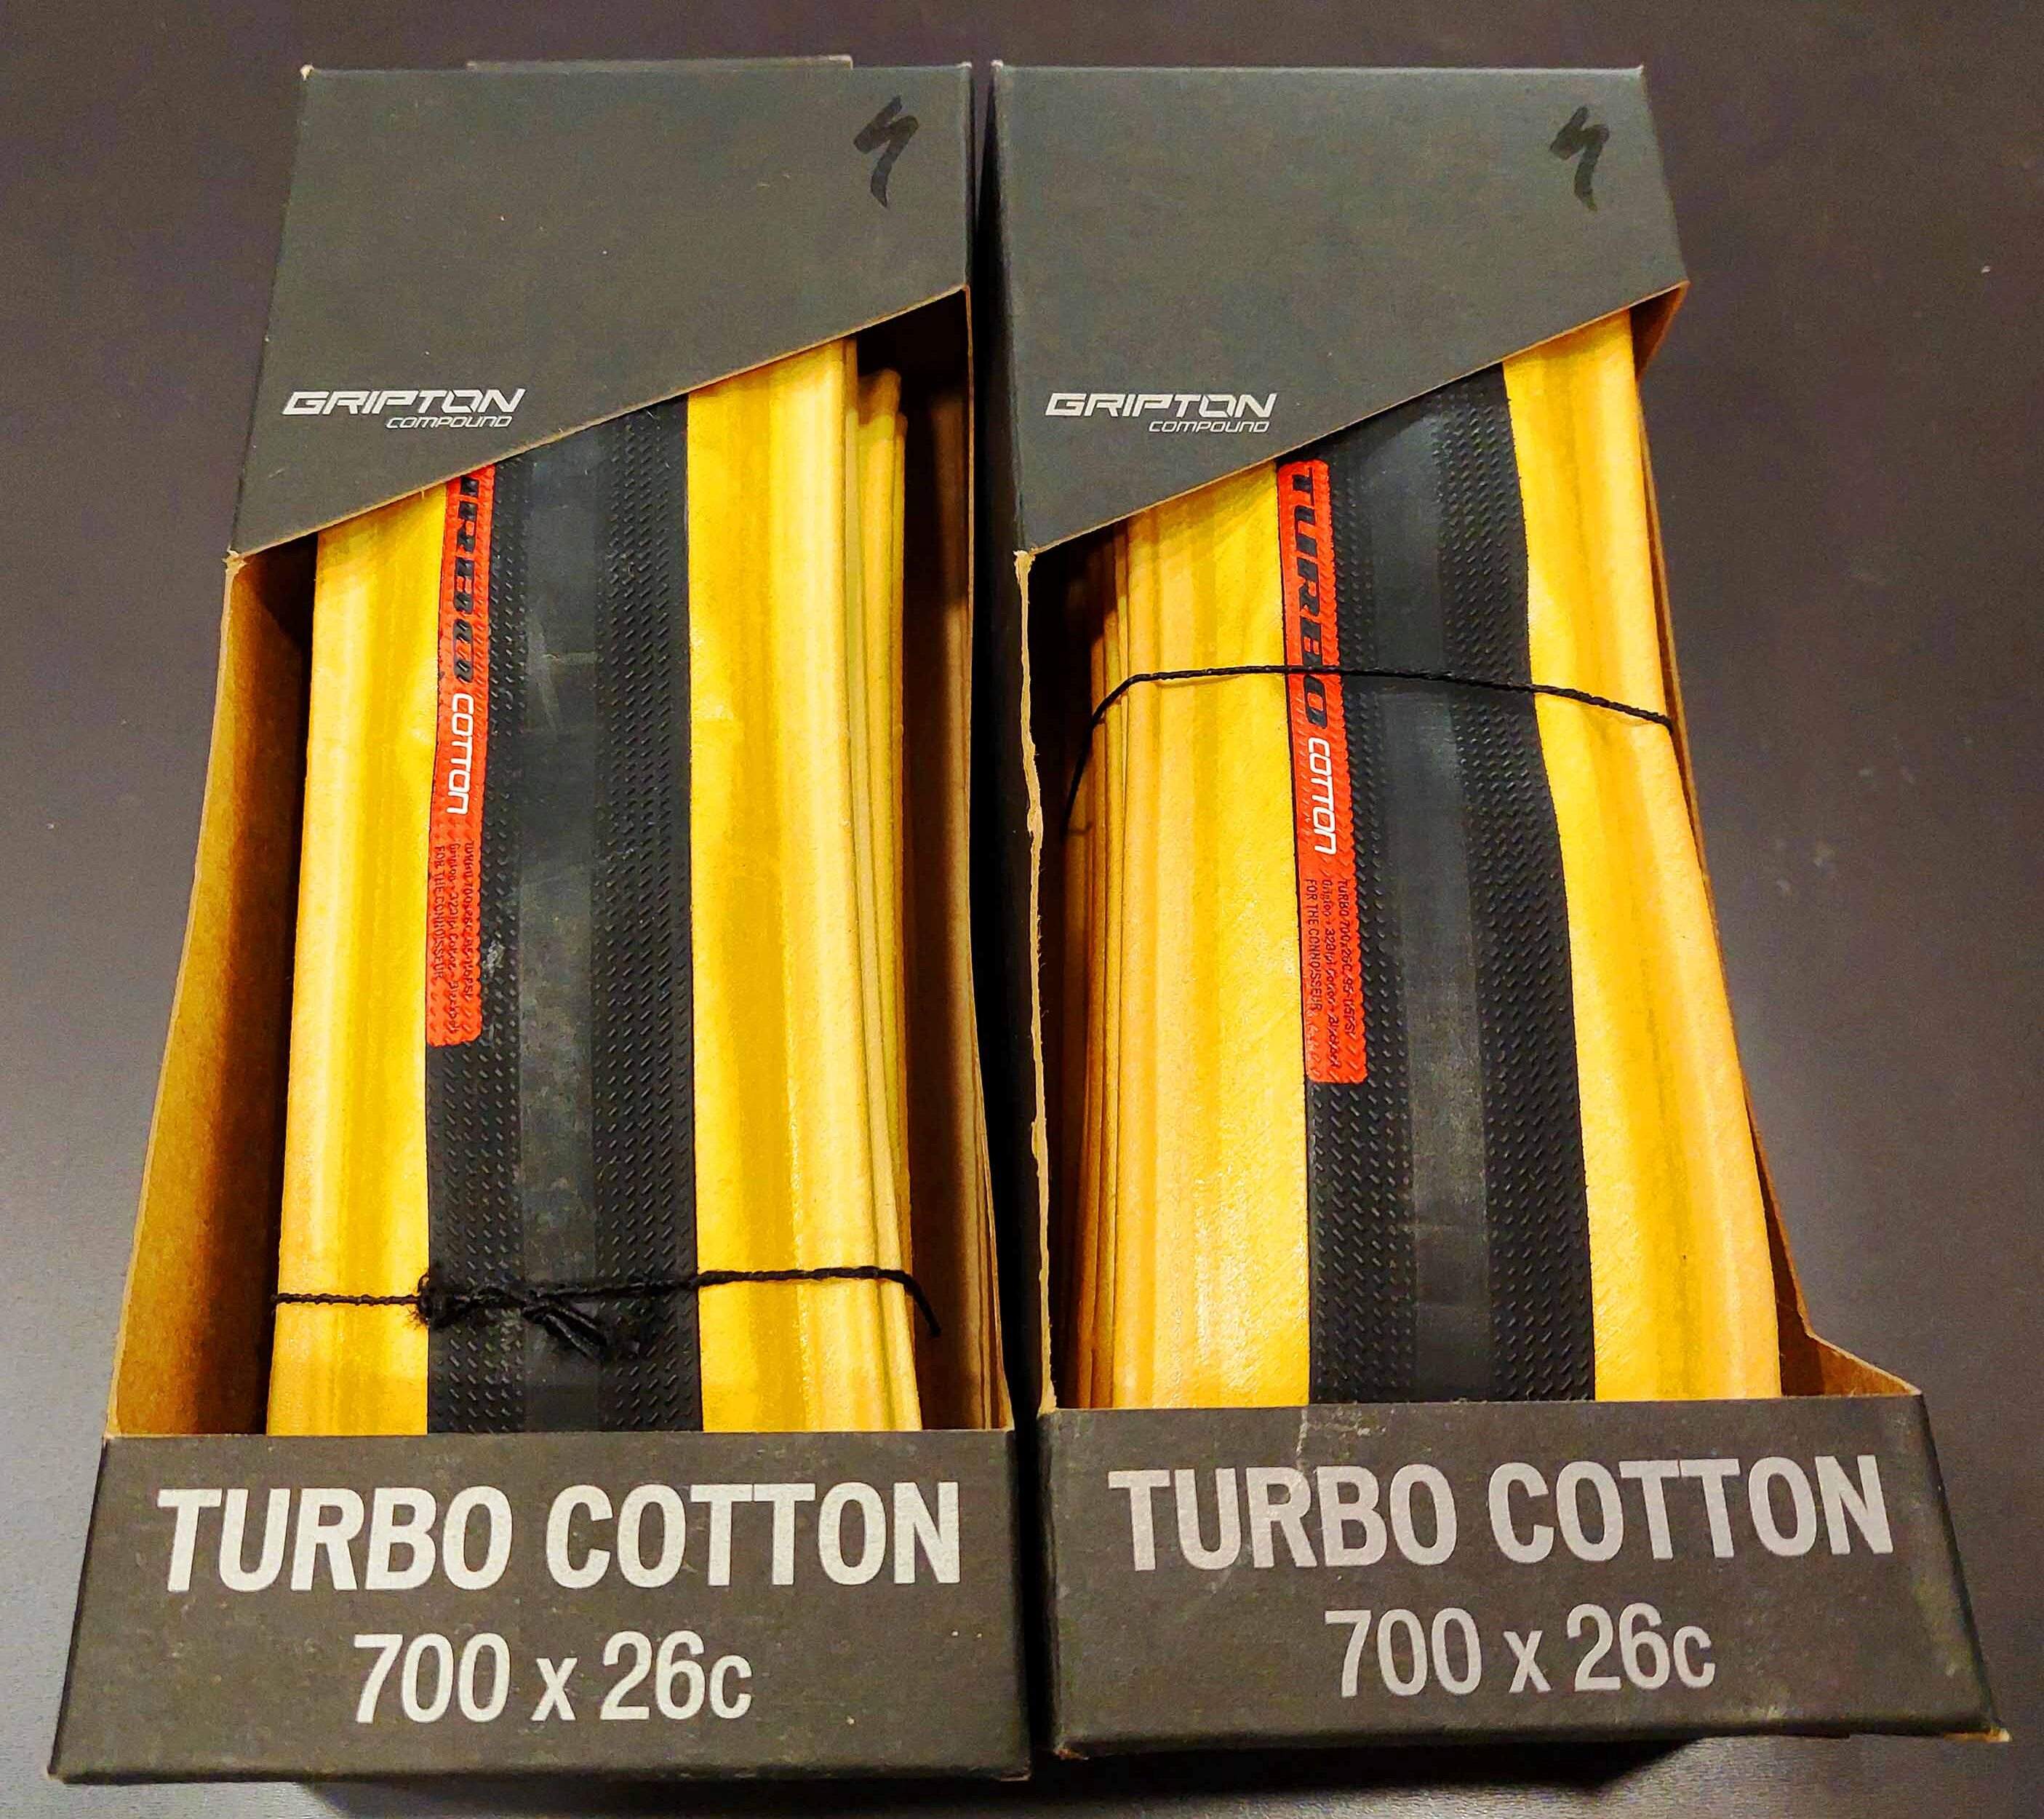 Copertone Specialized Turbo Cotton bicolore 700x26 art.00015-1506 Euro 65